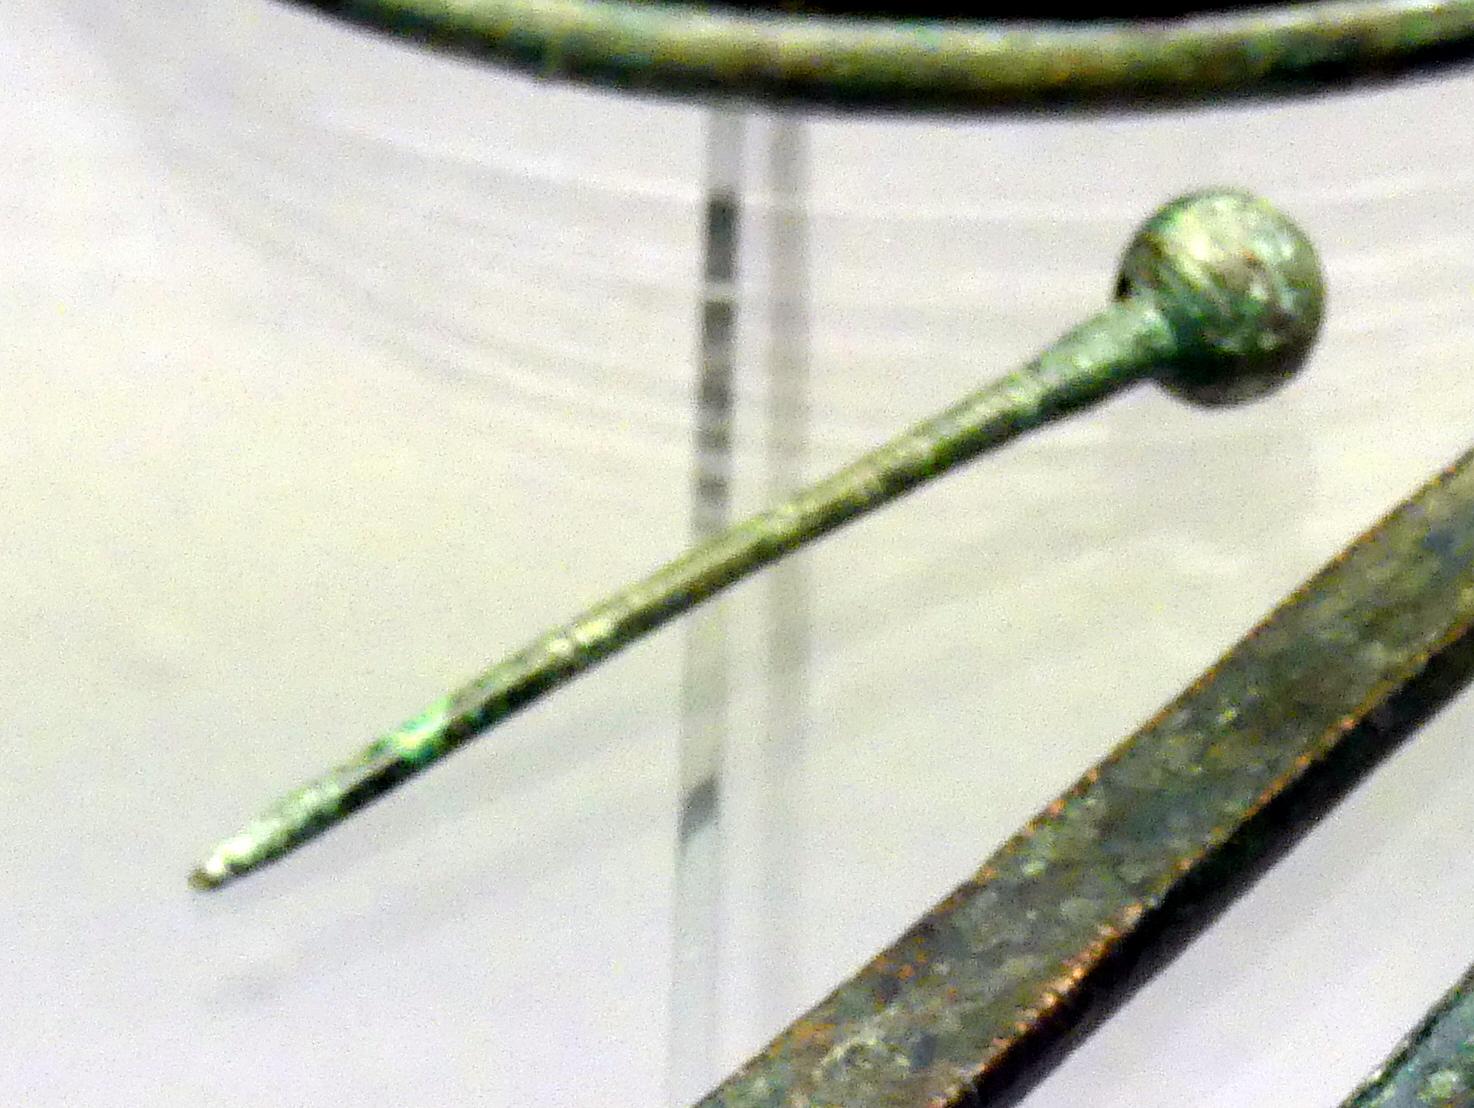 Durchlochte Kugelkopfnadel, Frühe Bronzezeit, 3365 - 1200 v. Chr.